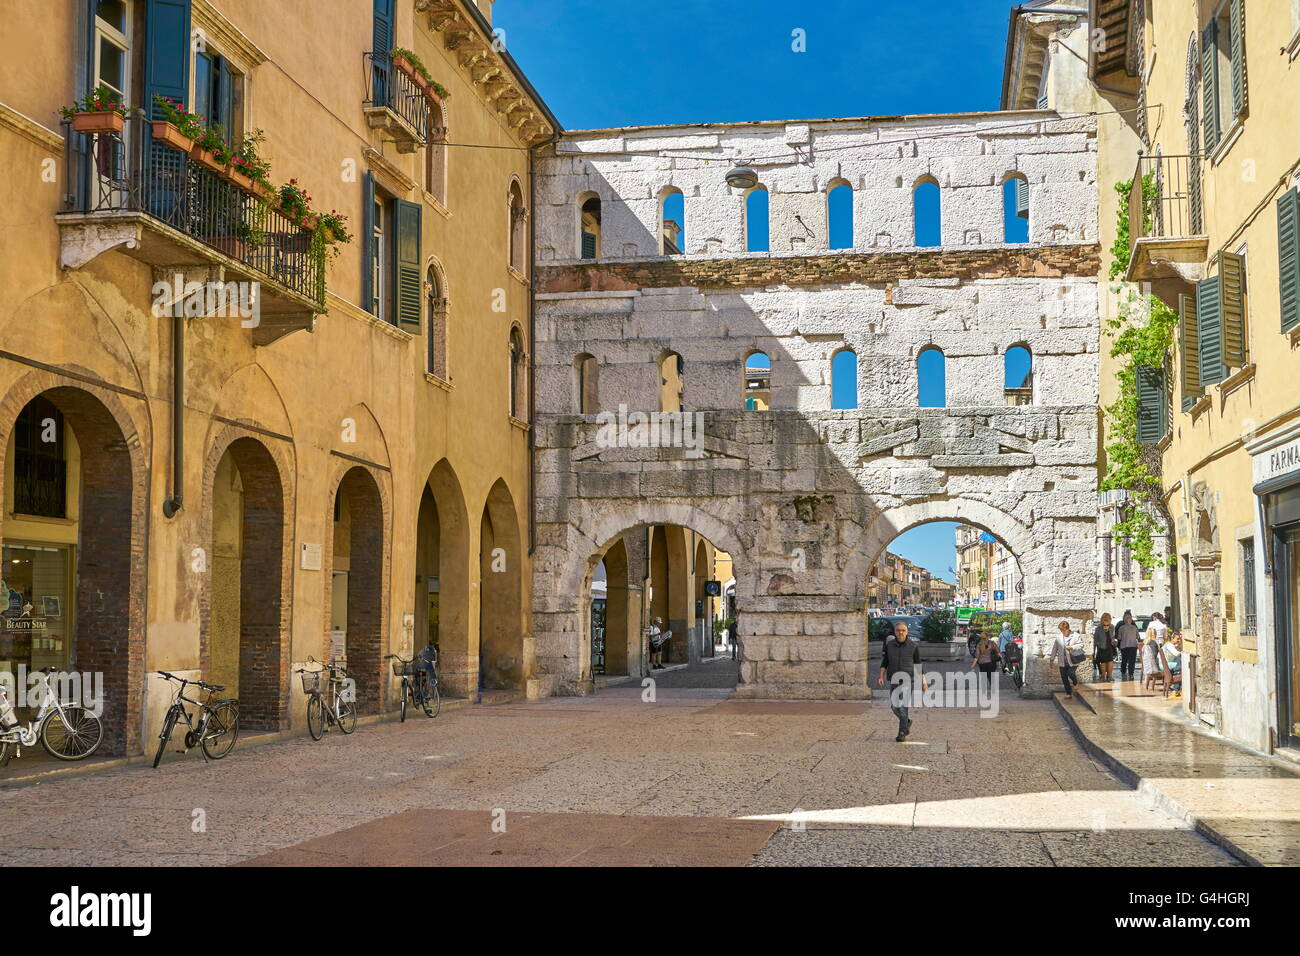 Verona old town, Veneto region, Italy Stock Photo